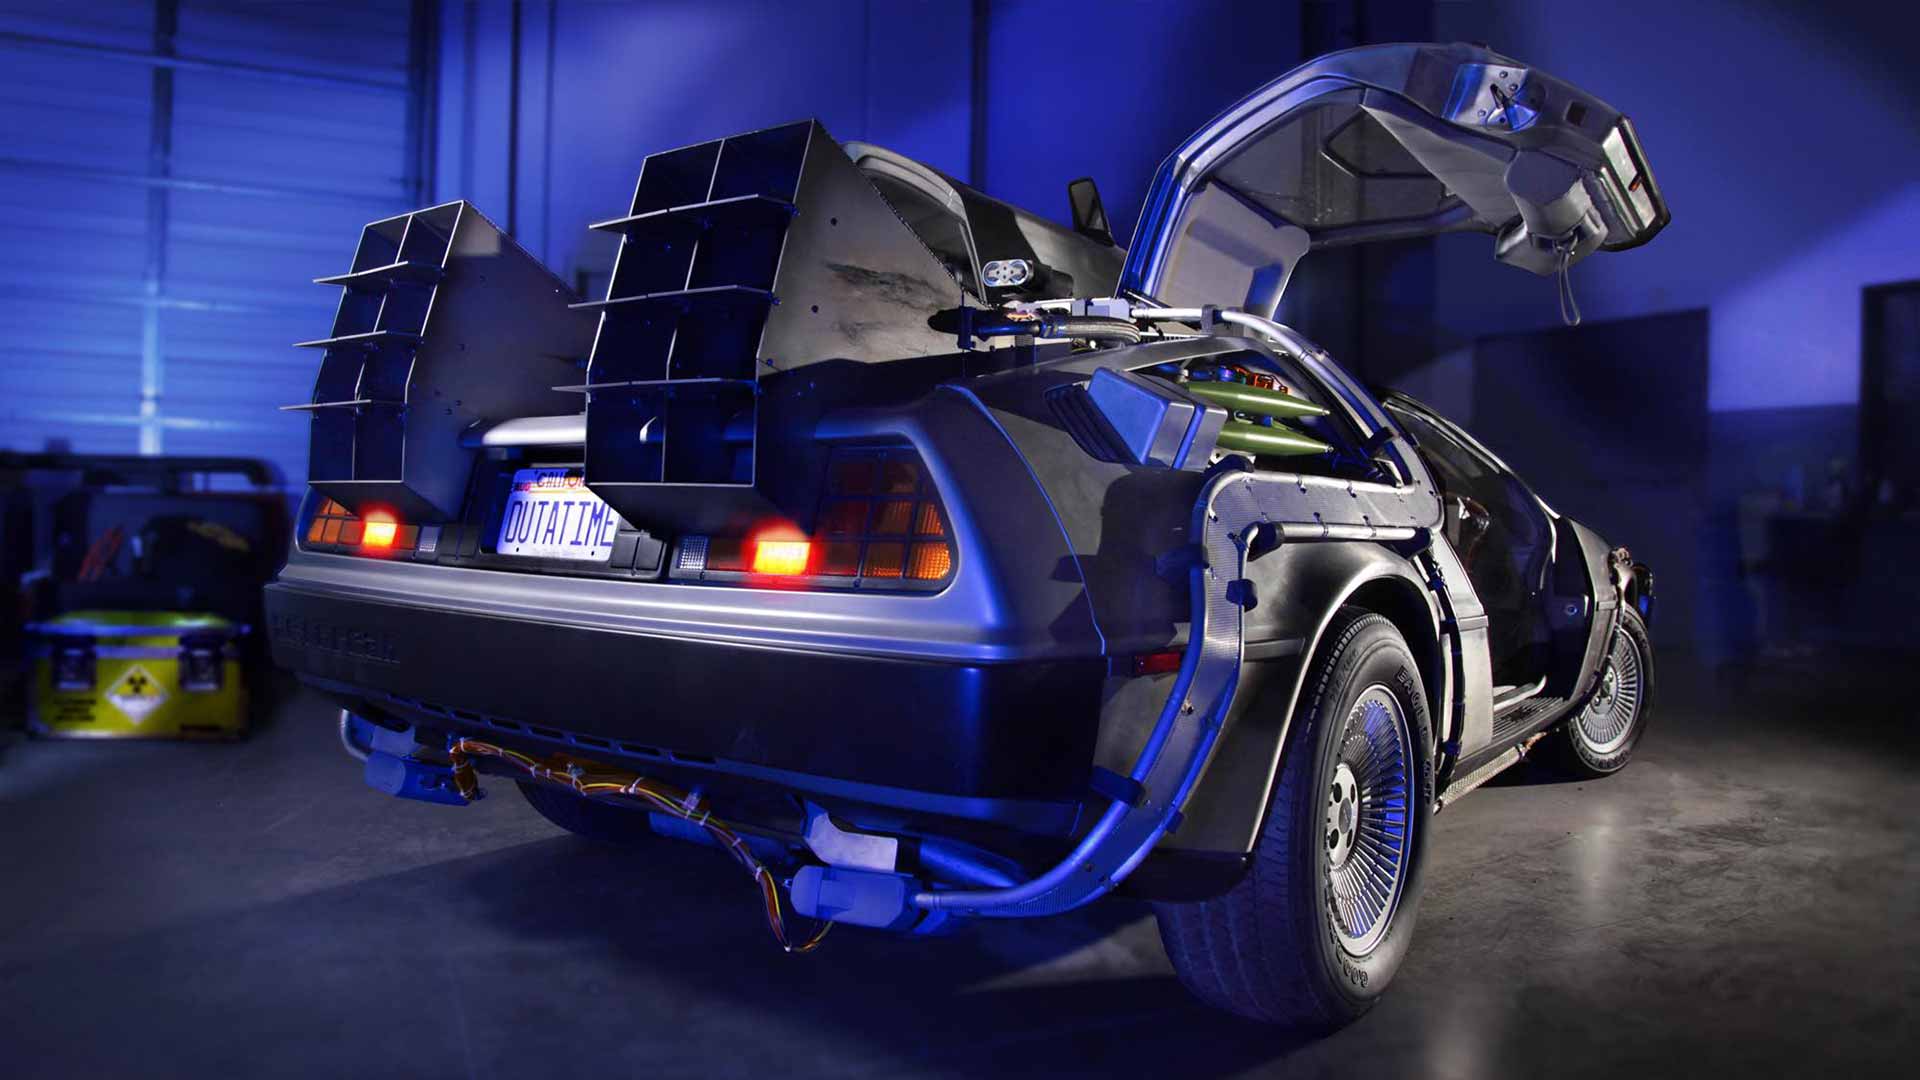 DeLorean Time Machine | DeLoreanDirectory.com